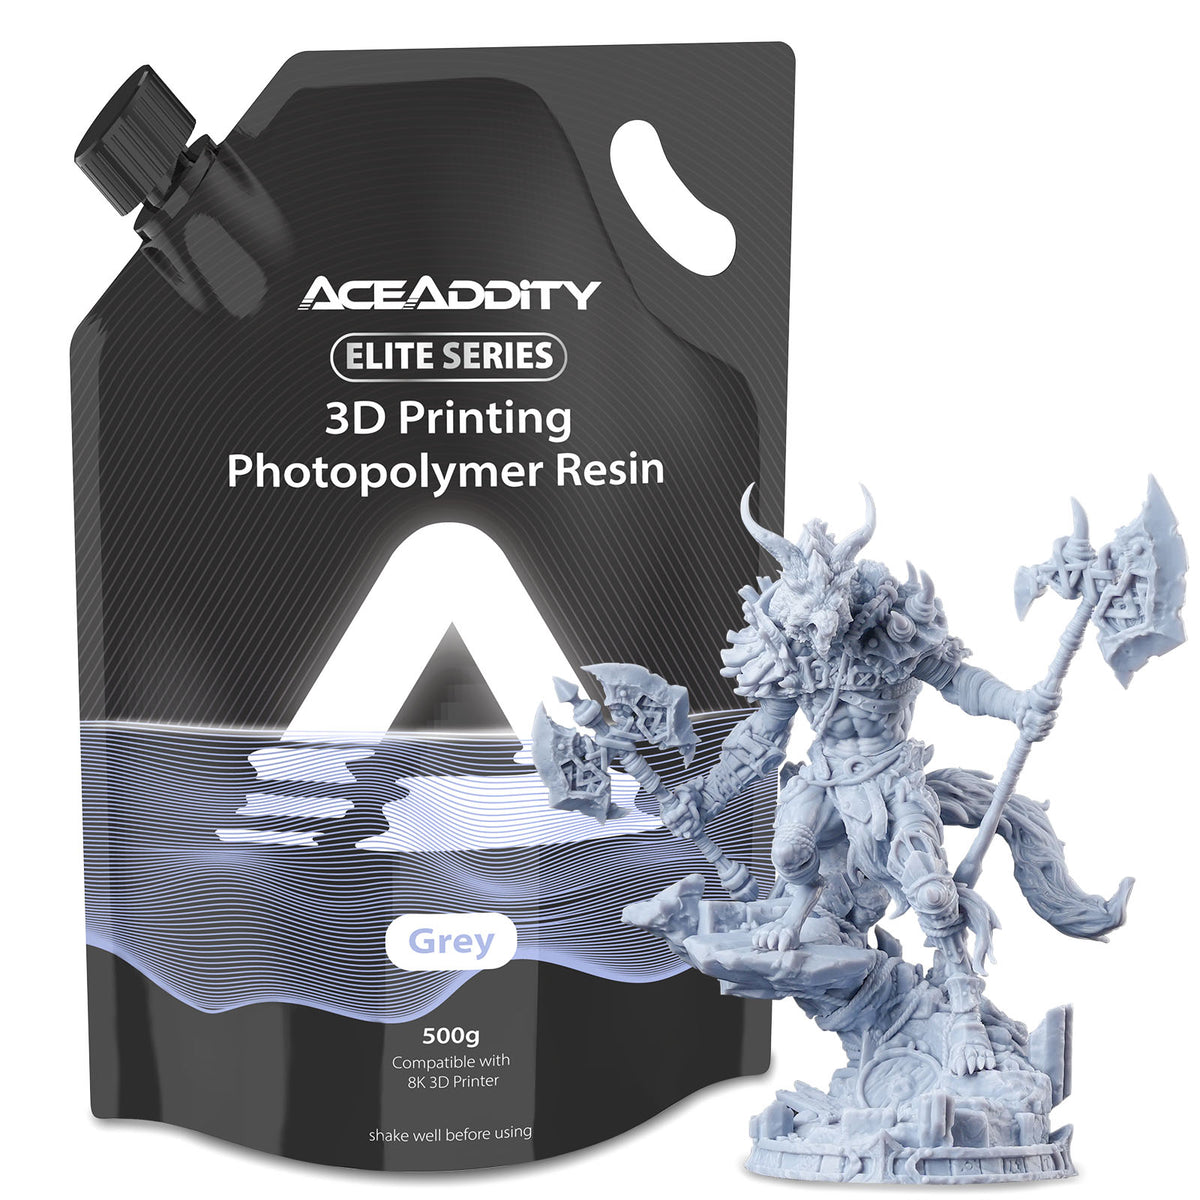 Harz der Aceaddity Elite-Serie, kompatibel mit 8K-3D-Druckern